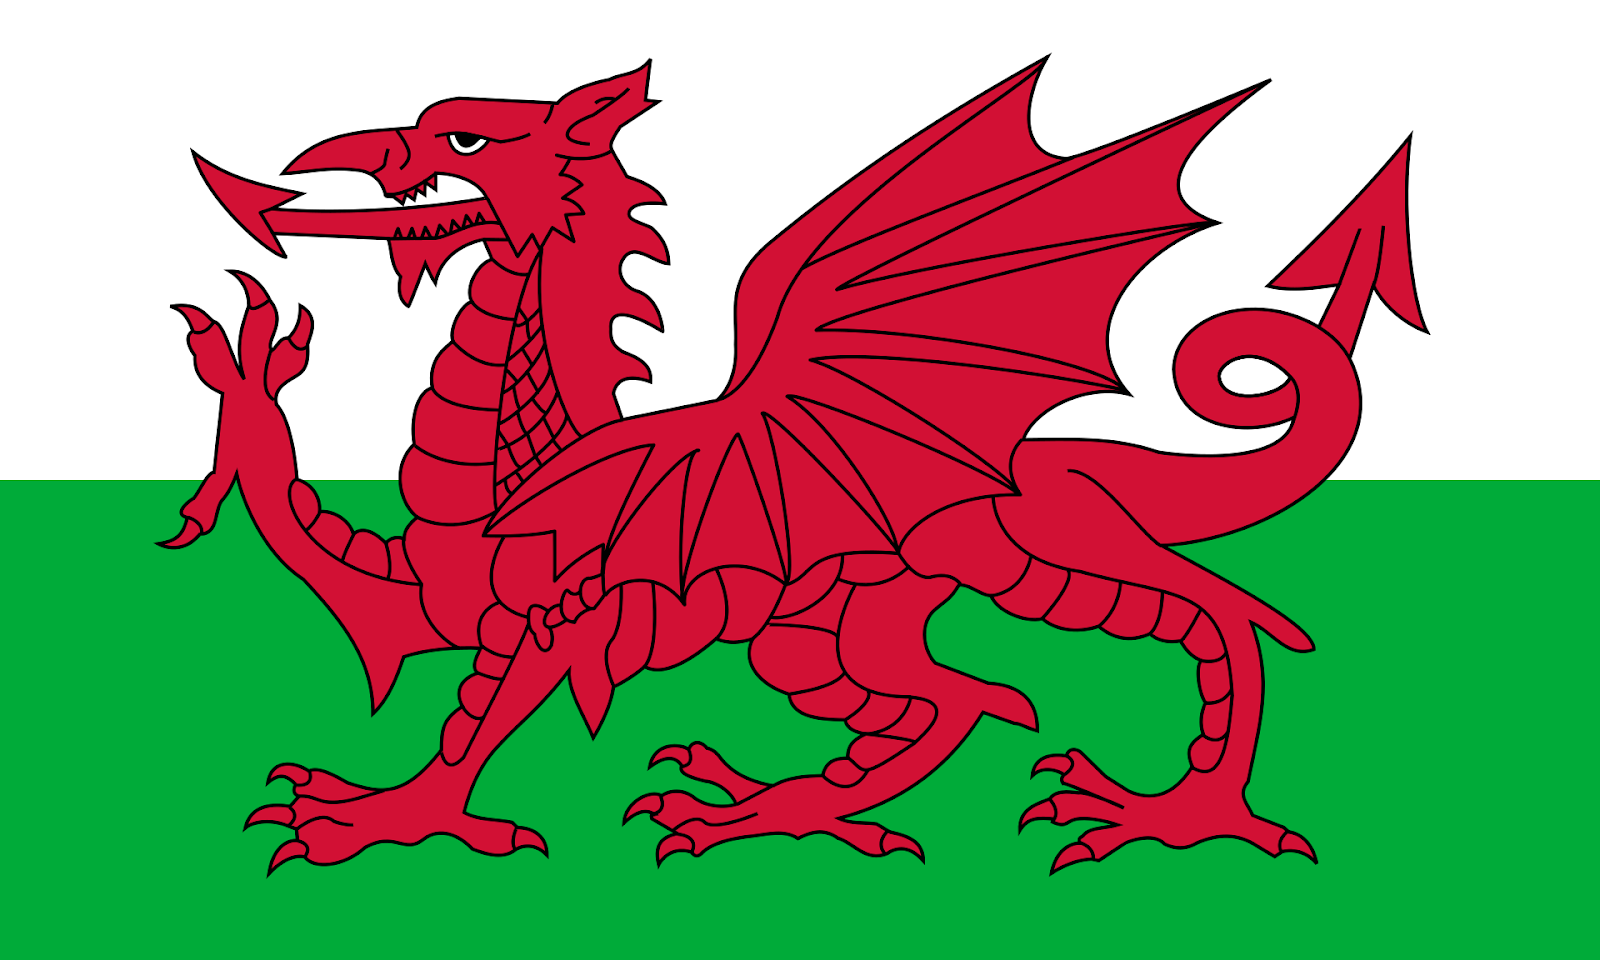 Văn hóa xứ Wales: Văn hóa phong phú và độc đáo của Xứ Wales luôn là nguồn cảm hứng cho những người yêu văn hóa và lịch sử. Từ những lễ hội âm nhạc đầy sôi động cho đến những truyền thống địa phương, hãy khám phá những điều đặc sắc và đầy sáng tạo từ văn hóa xứ Wales ngay hôm nay.